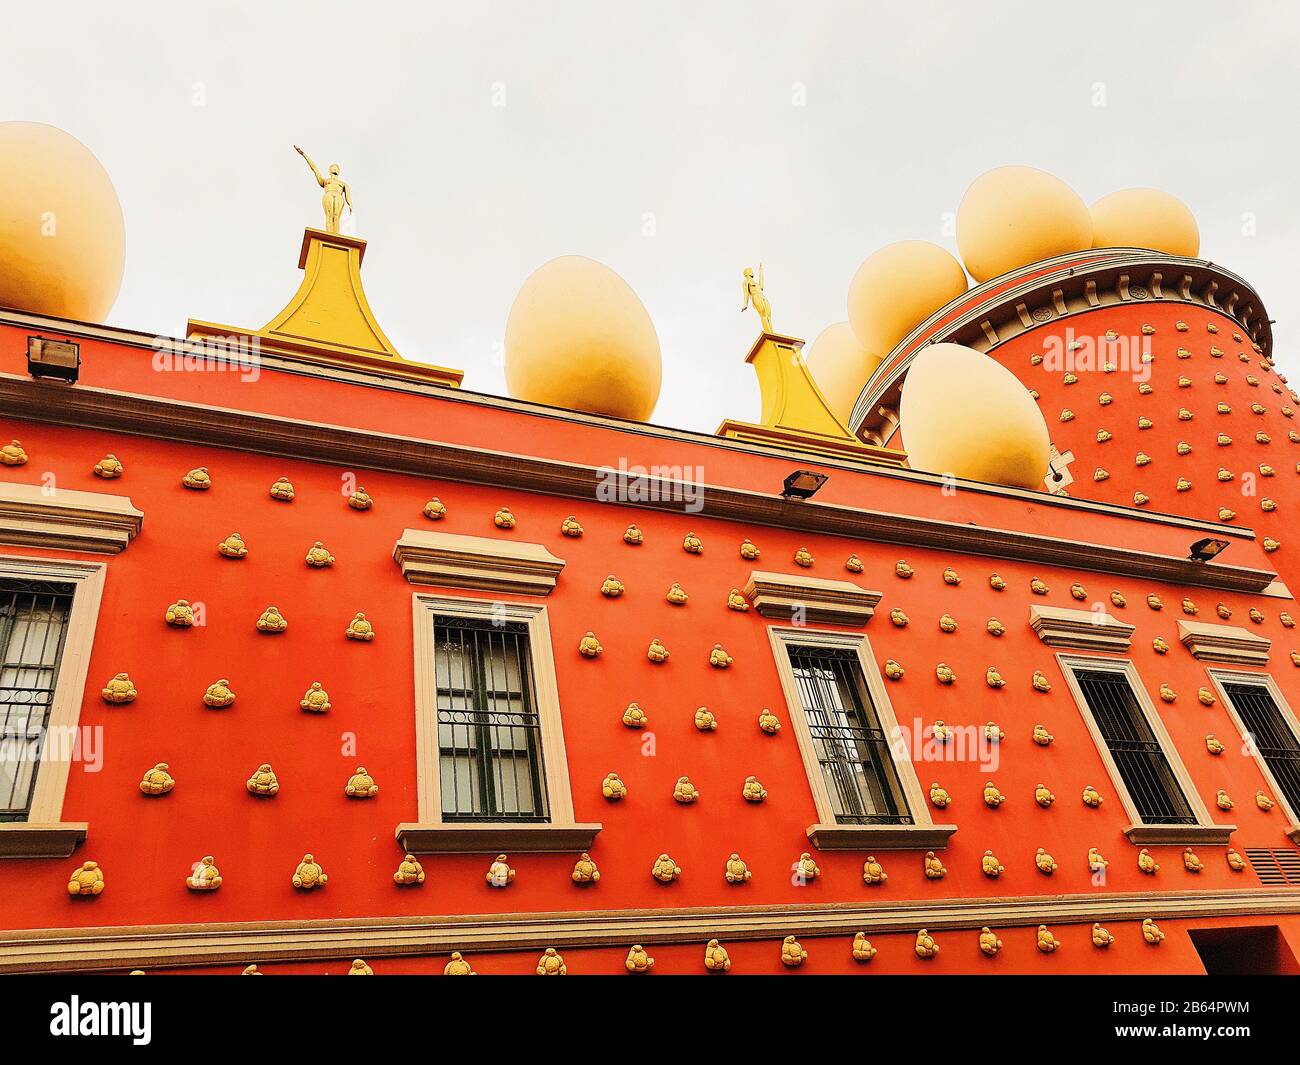 Le célèbre musée - théâtre de Salvador Dali dans la ville de figueras en Espagne Banque D'Images